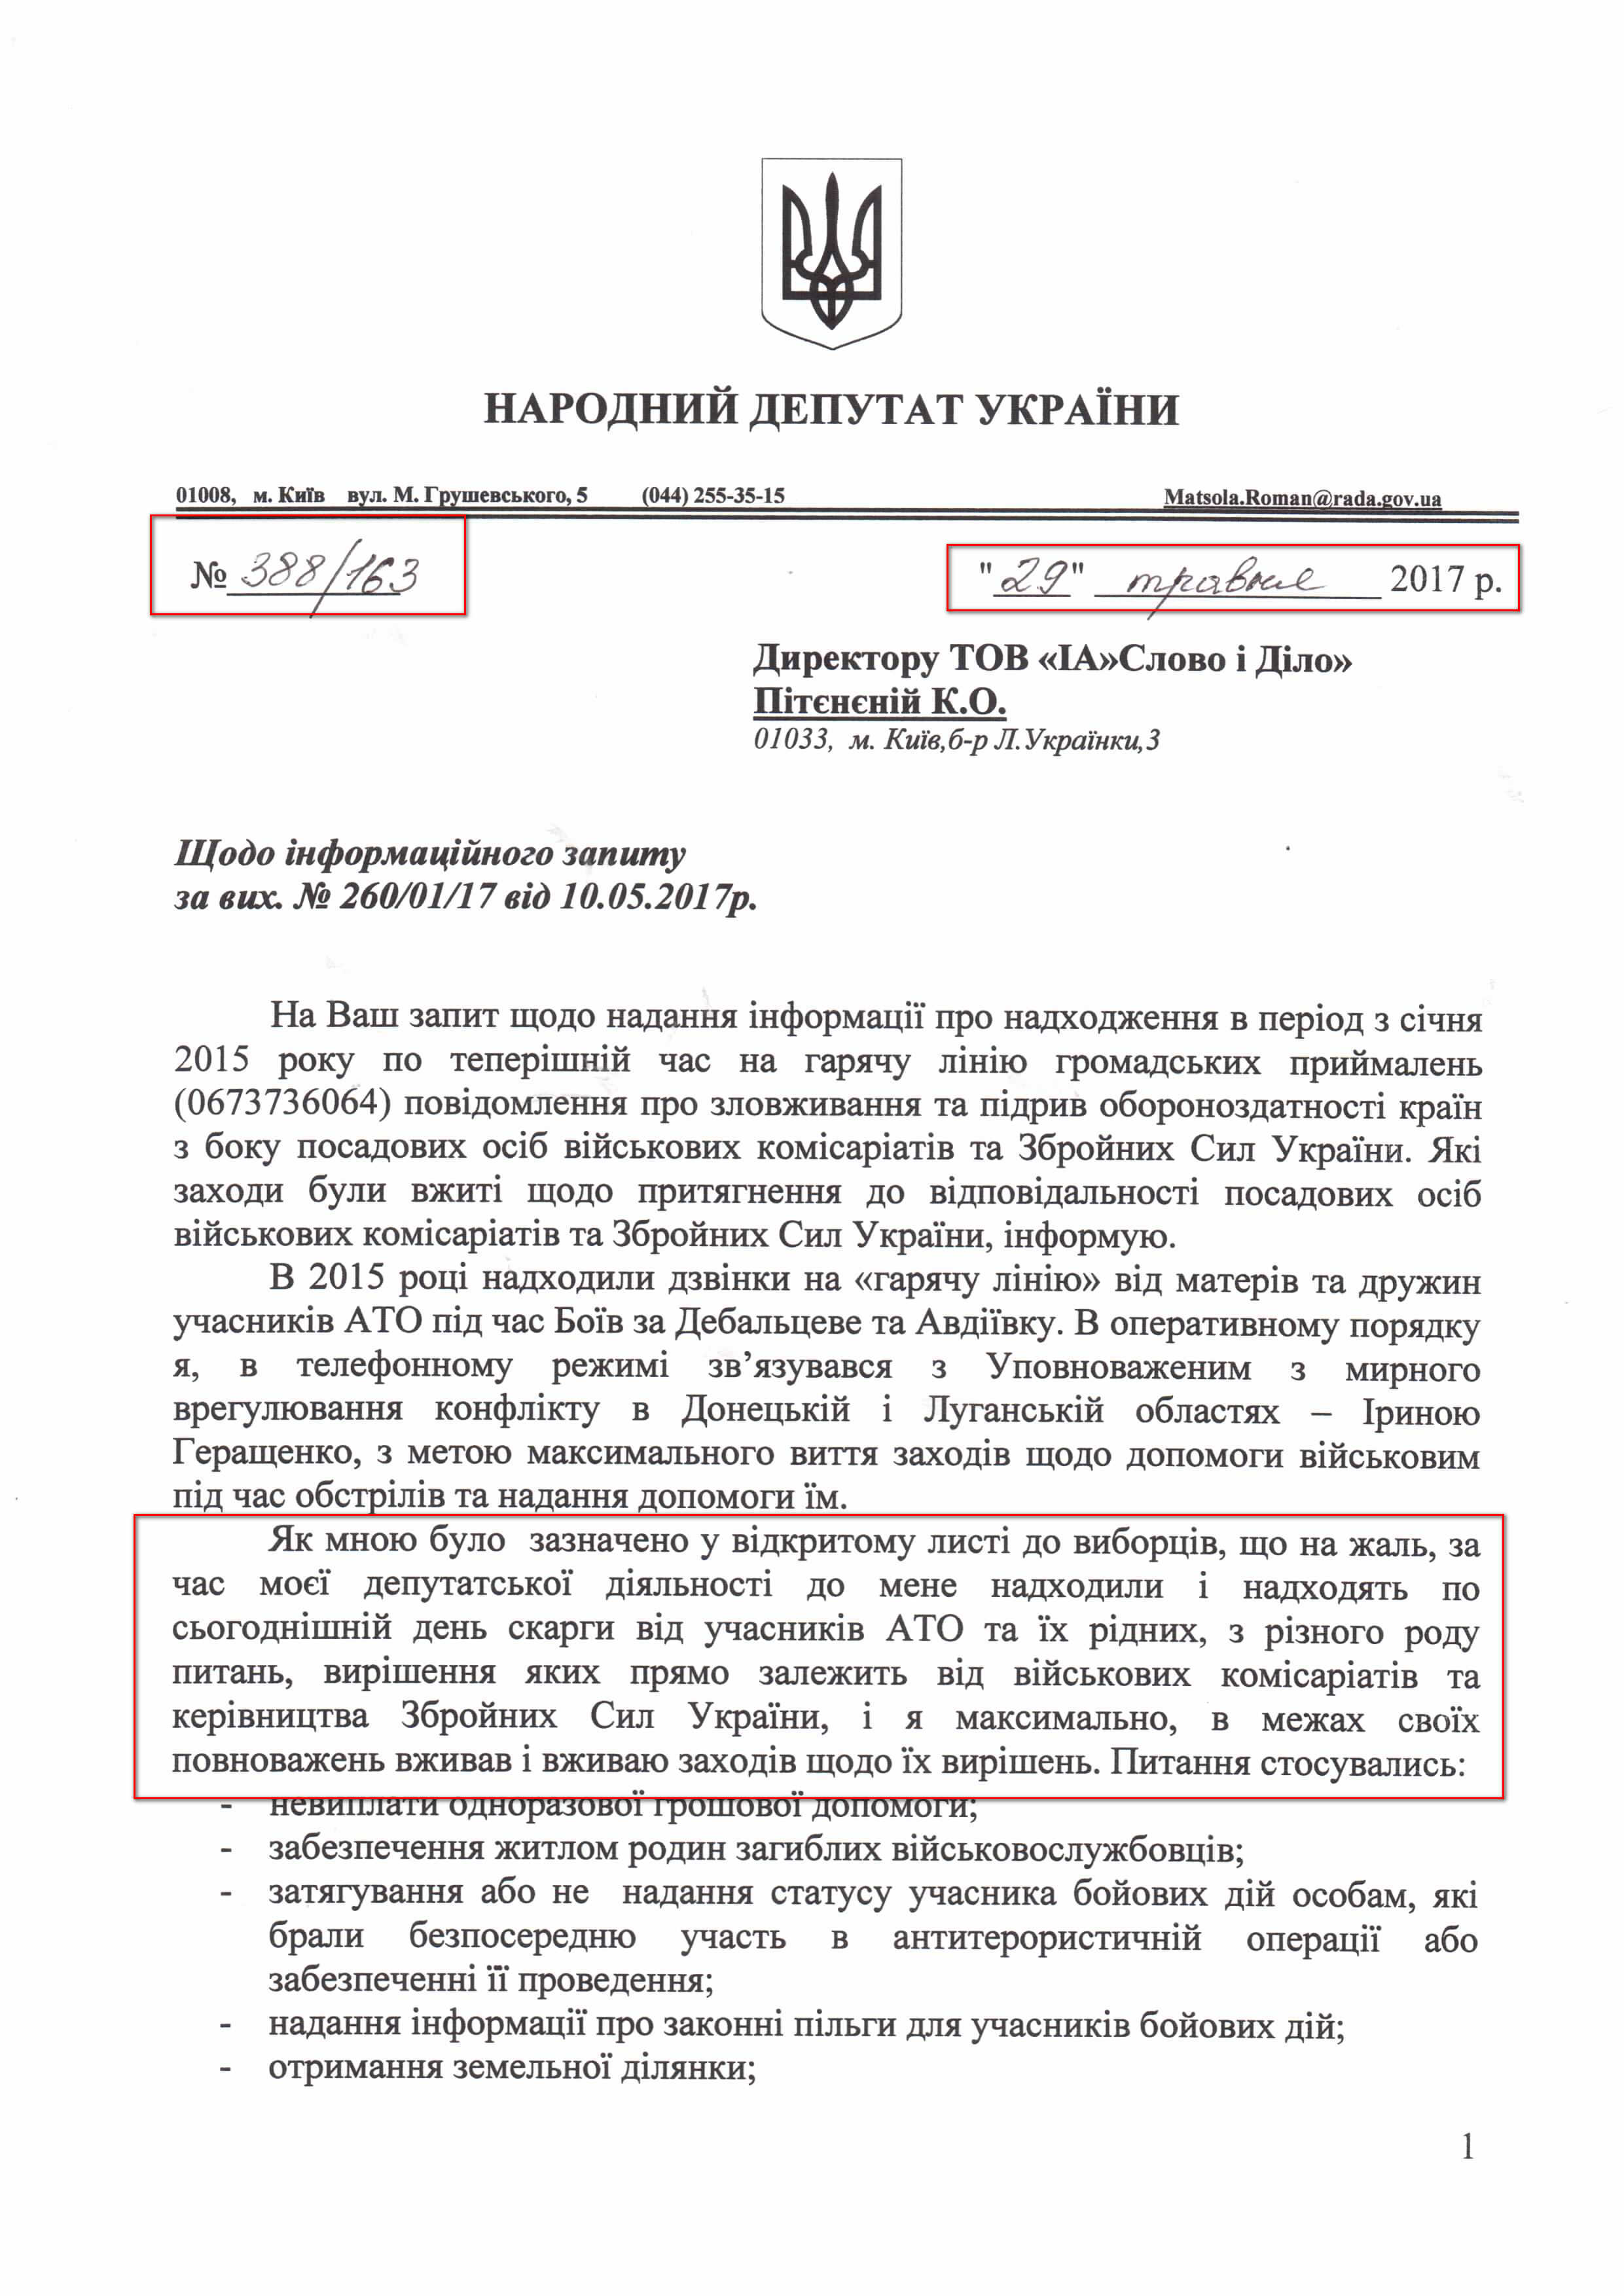 Лист народного депутата України Романа Мацоли №388/163 від 29 травня 2017 року